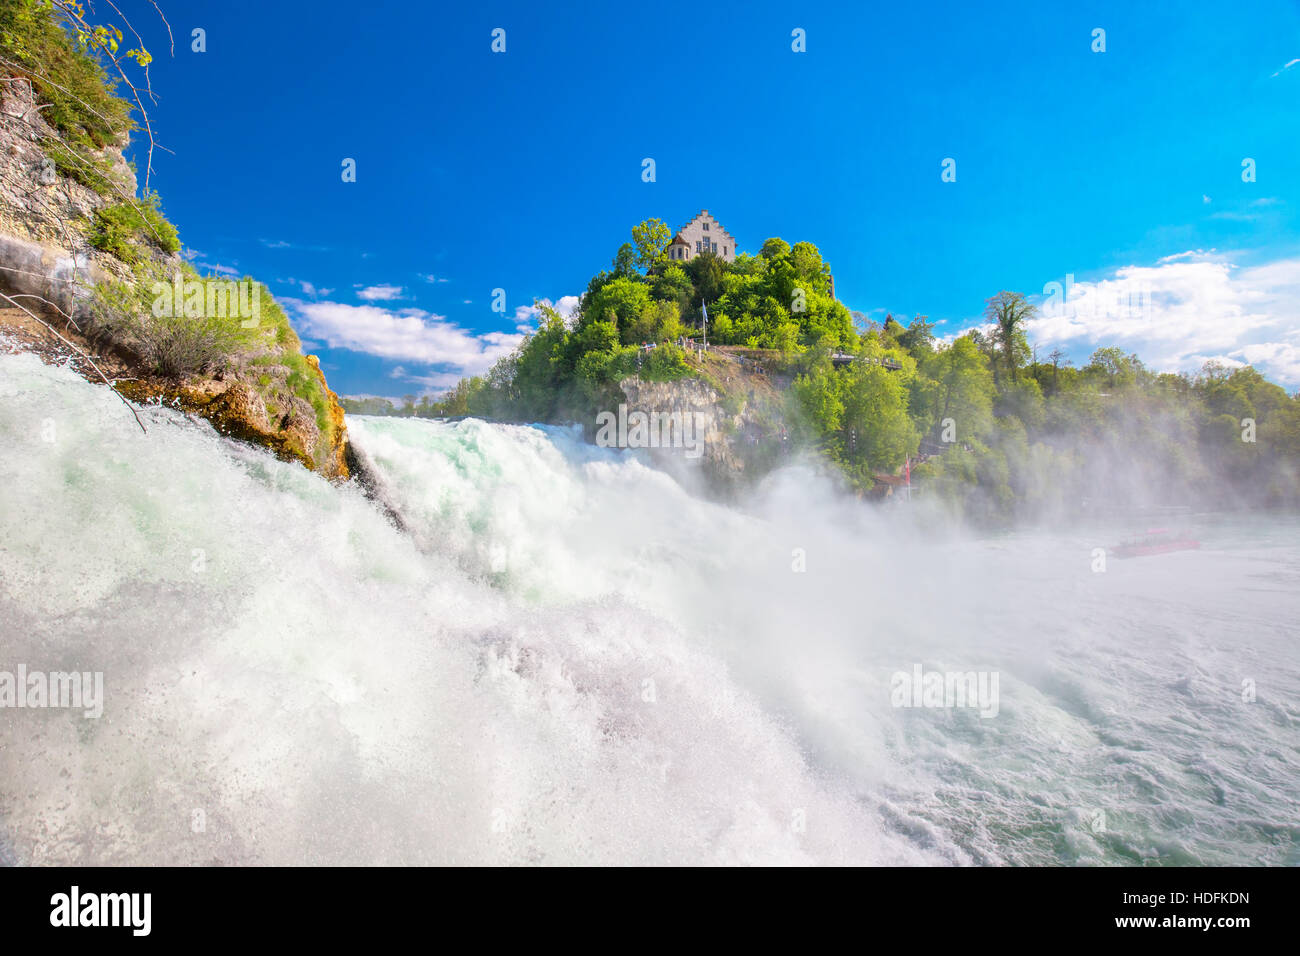 Rheinfall, den größten schlichten Wasserfall in Europa befindet sich in der Nähe von Schaffhausen in der Schweiz Stockfoto